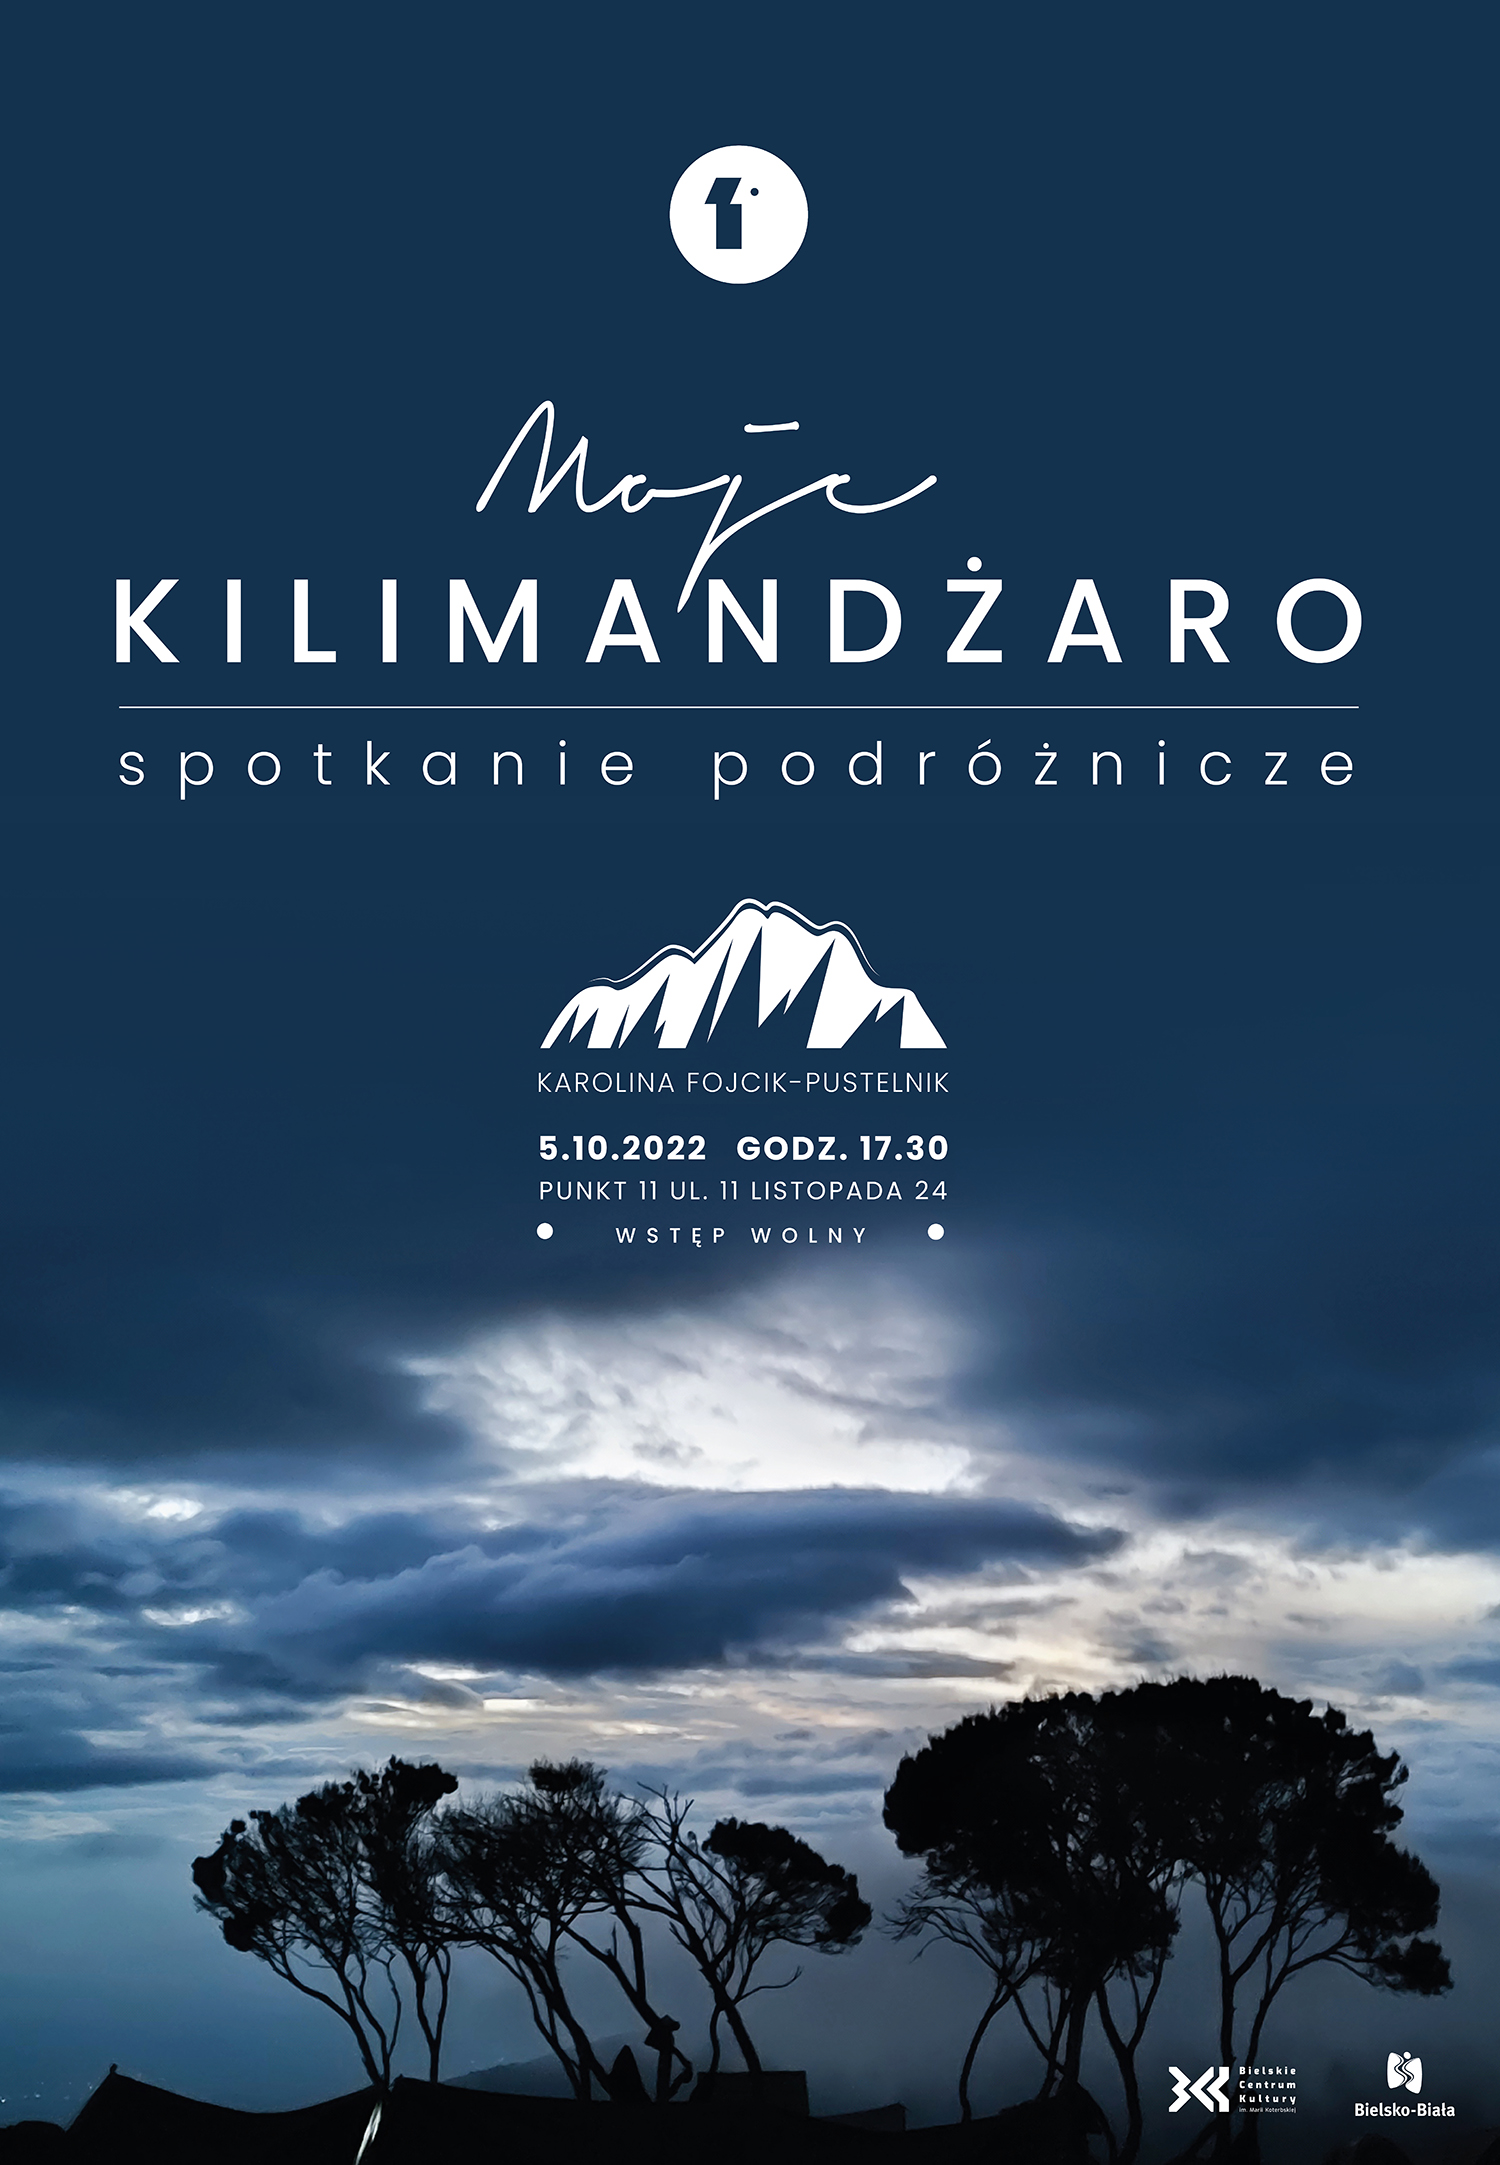  Karolina Fojcik-Pustelnik: Moje Kilimandżaro
 Plakat wydarzenia